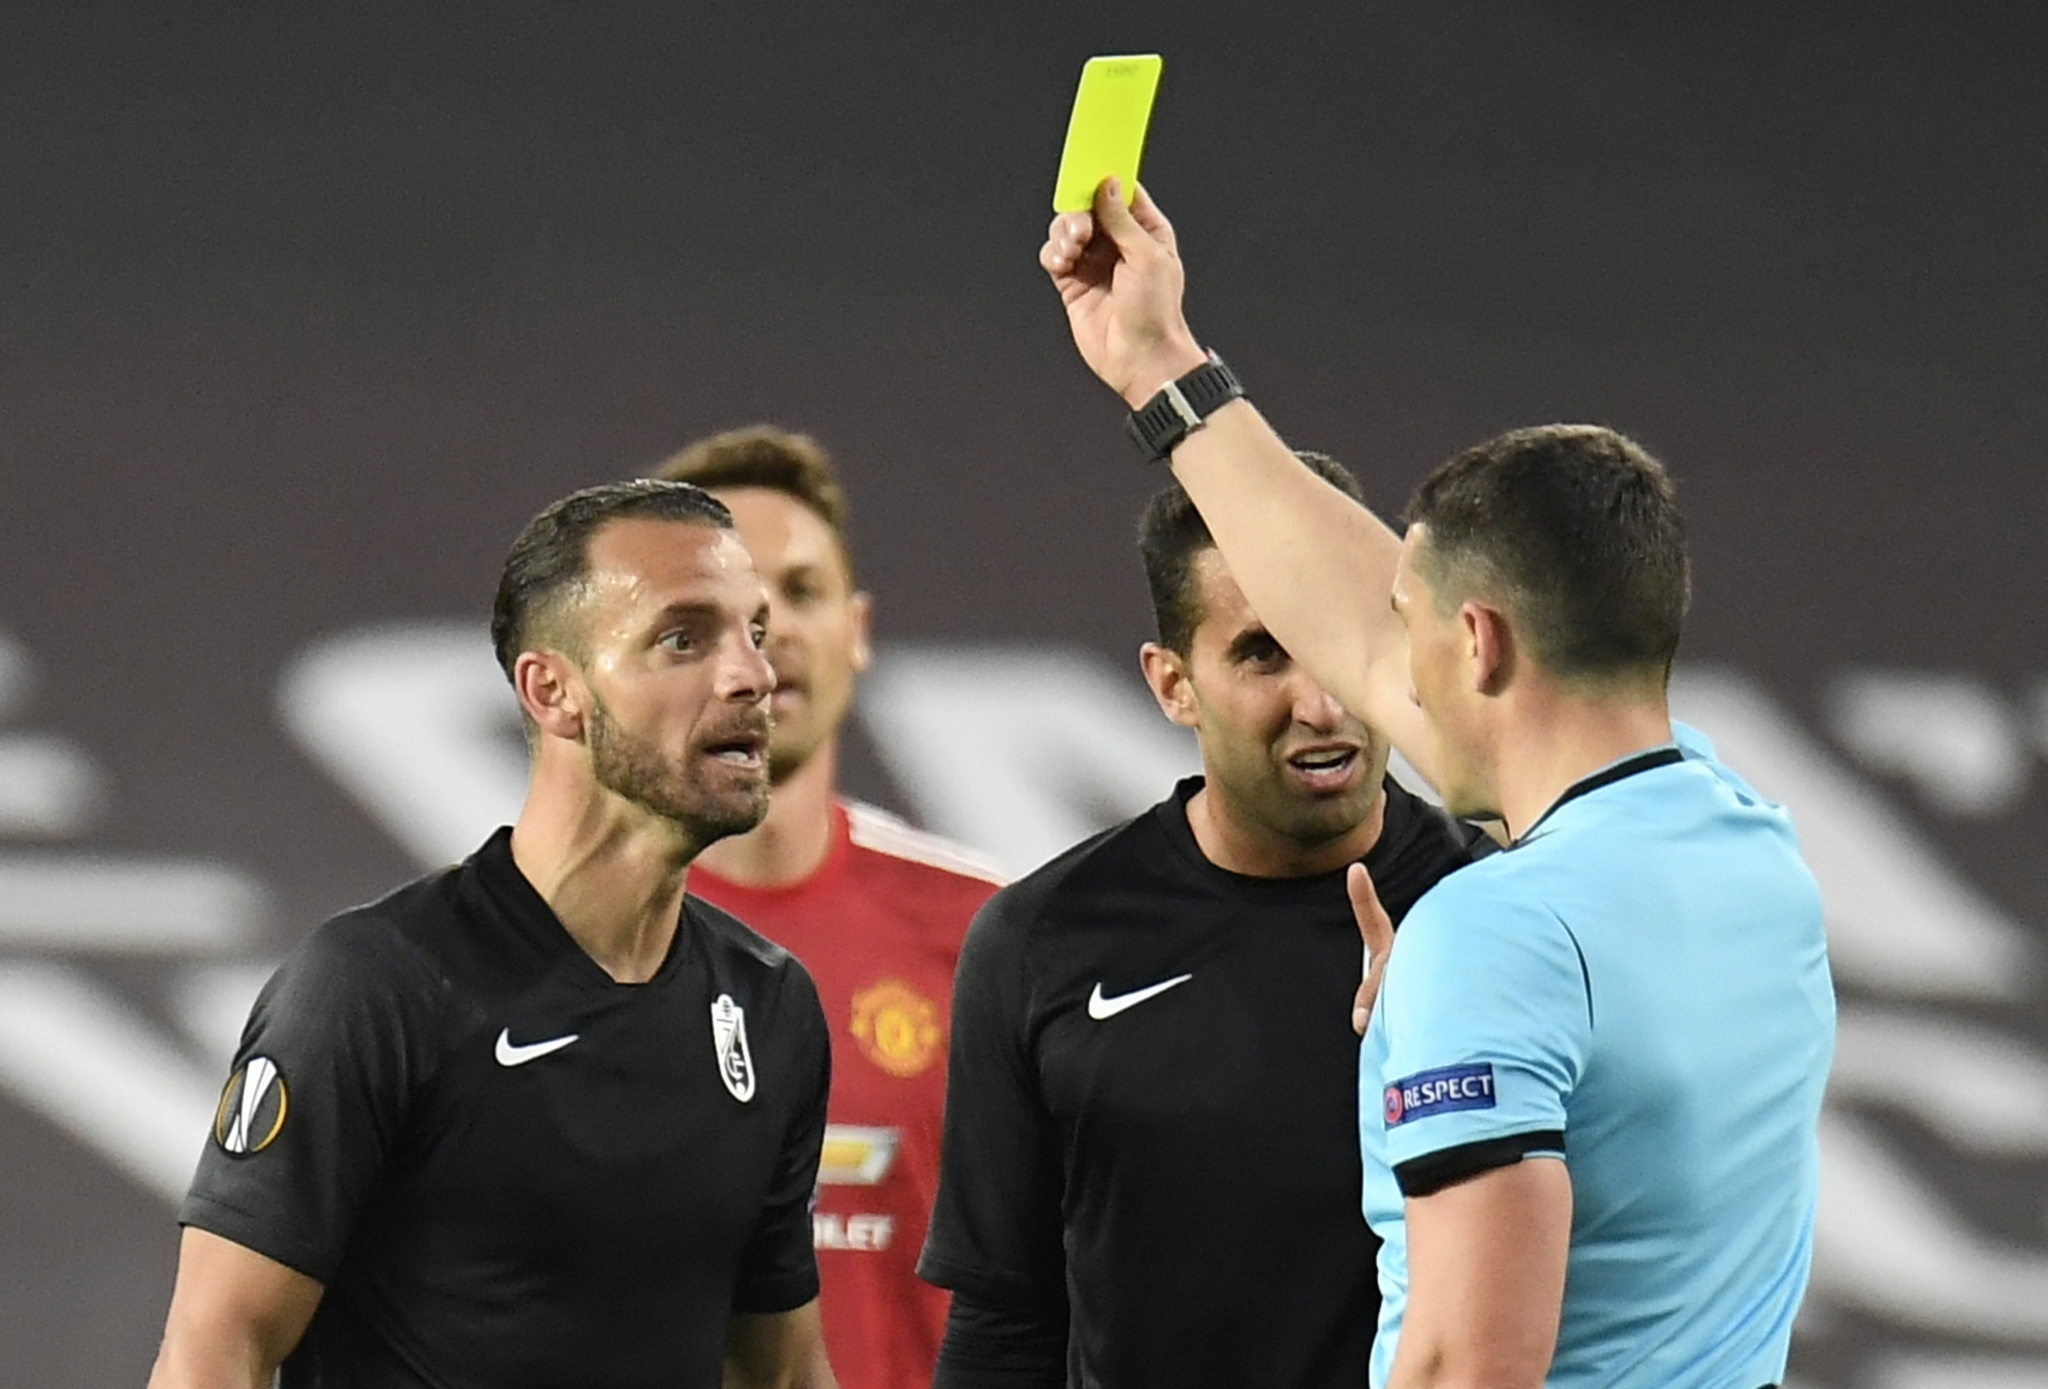 UEFA ŠOKIRALA IZBOROM ARBITRA! Zvezdi sudi Rumun koji je na poluvremenu obećao igraču da će svirati dva penala za njegov tim!